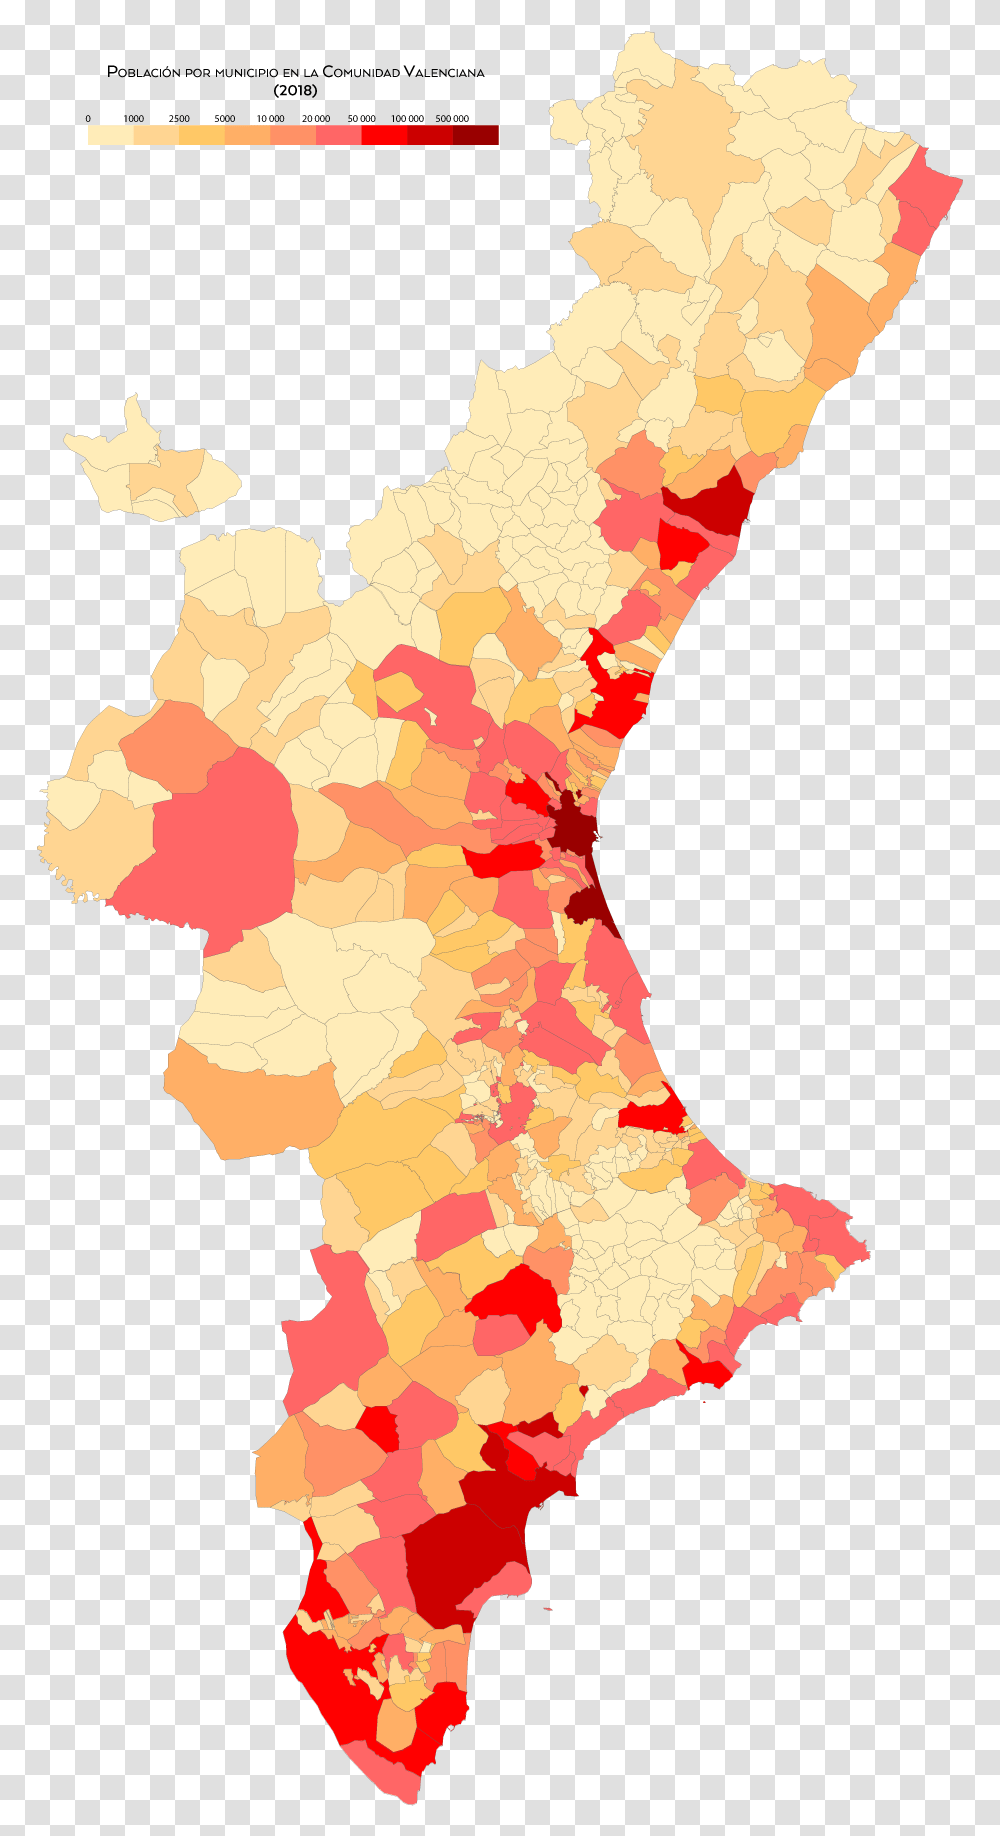 Comunidad Valenciana Poblacion Clima De La Comunidad Valenciana, Map, Diagram, Plot, Atlas Transparent Png